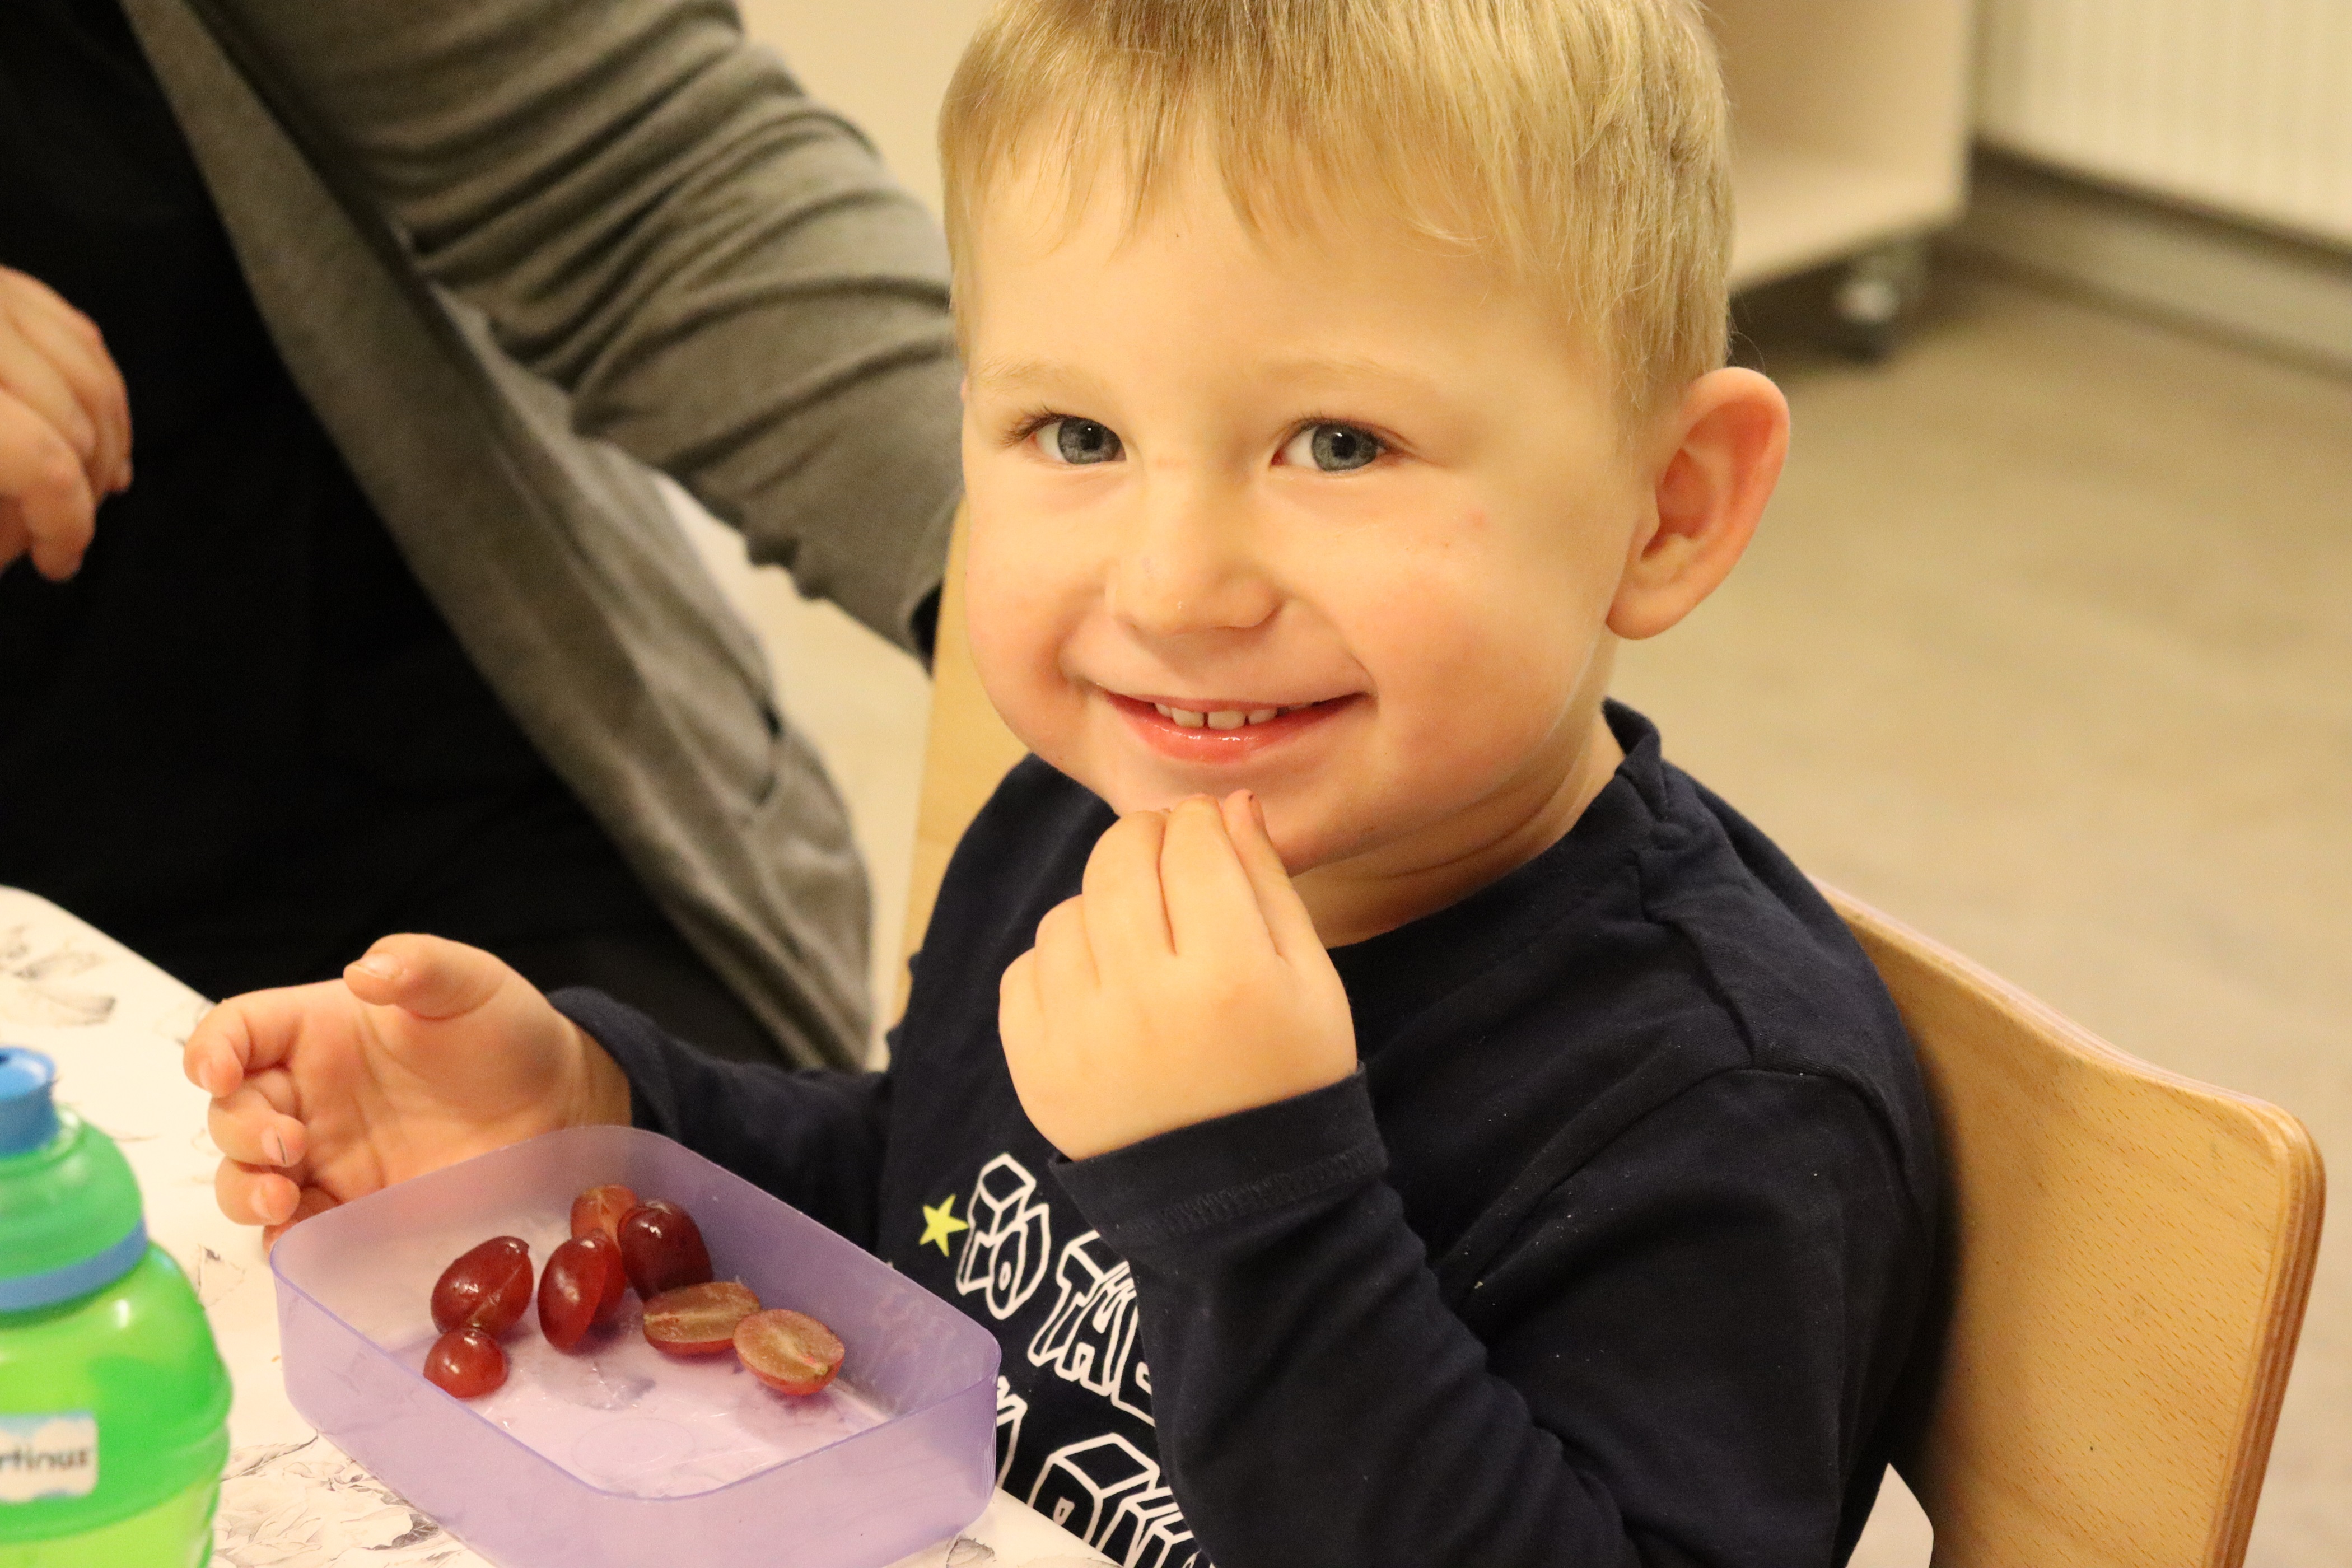 Vuggestuebarn spiser frugt imens han smiler stort